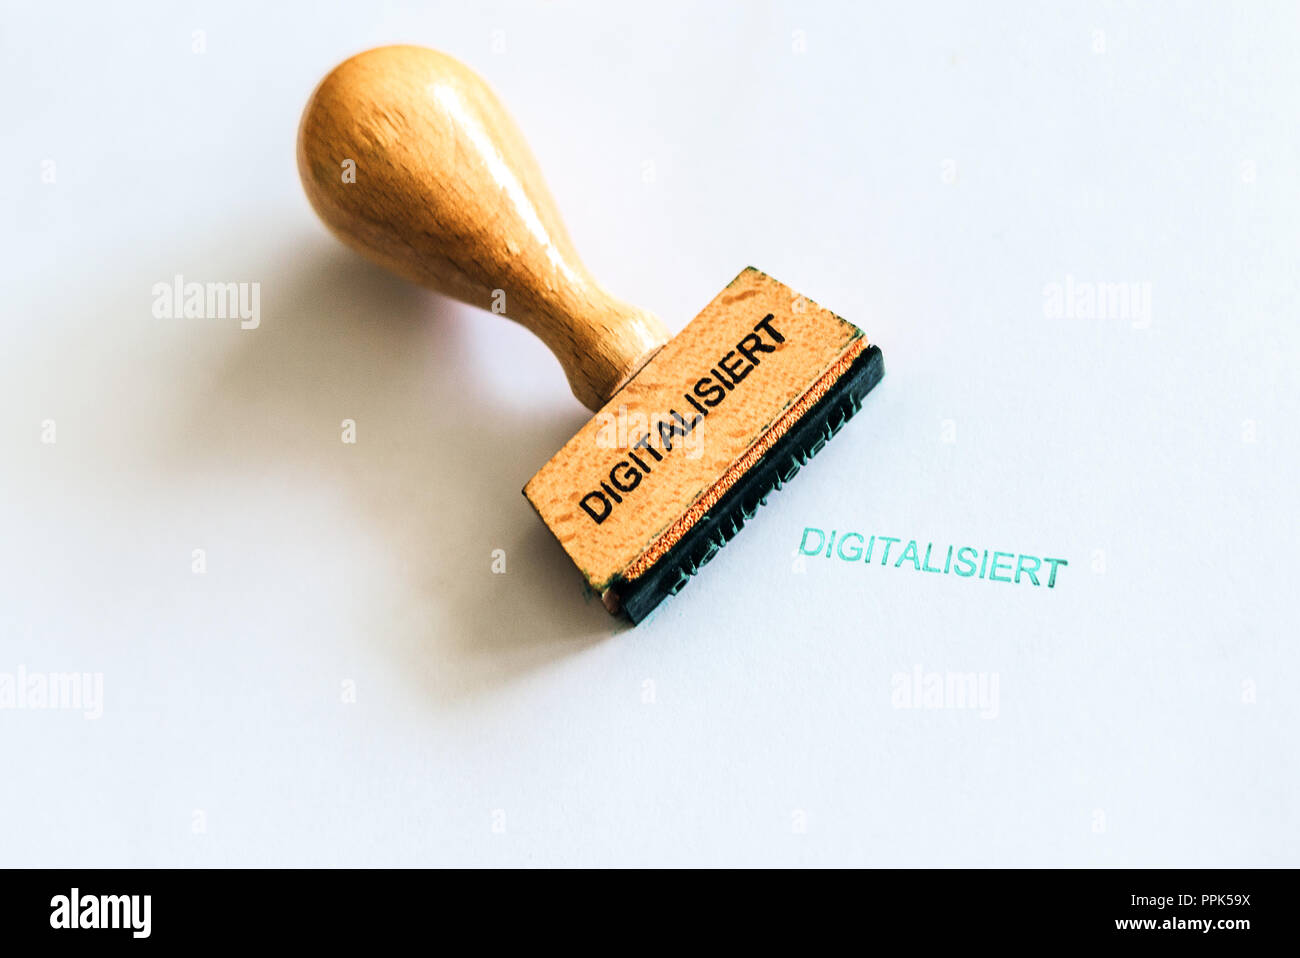 Un francobollo di legno segna il tedesco parola 'digitalisiert' che significa 'igitized' Foto Stock